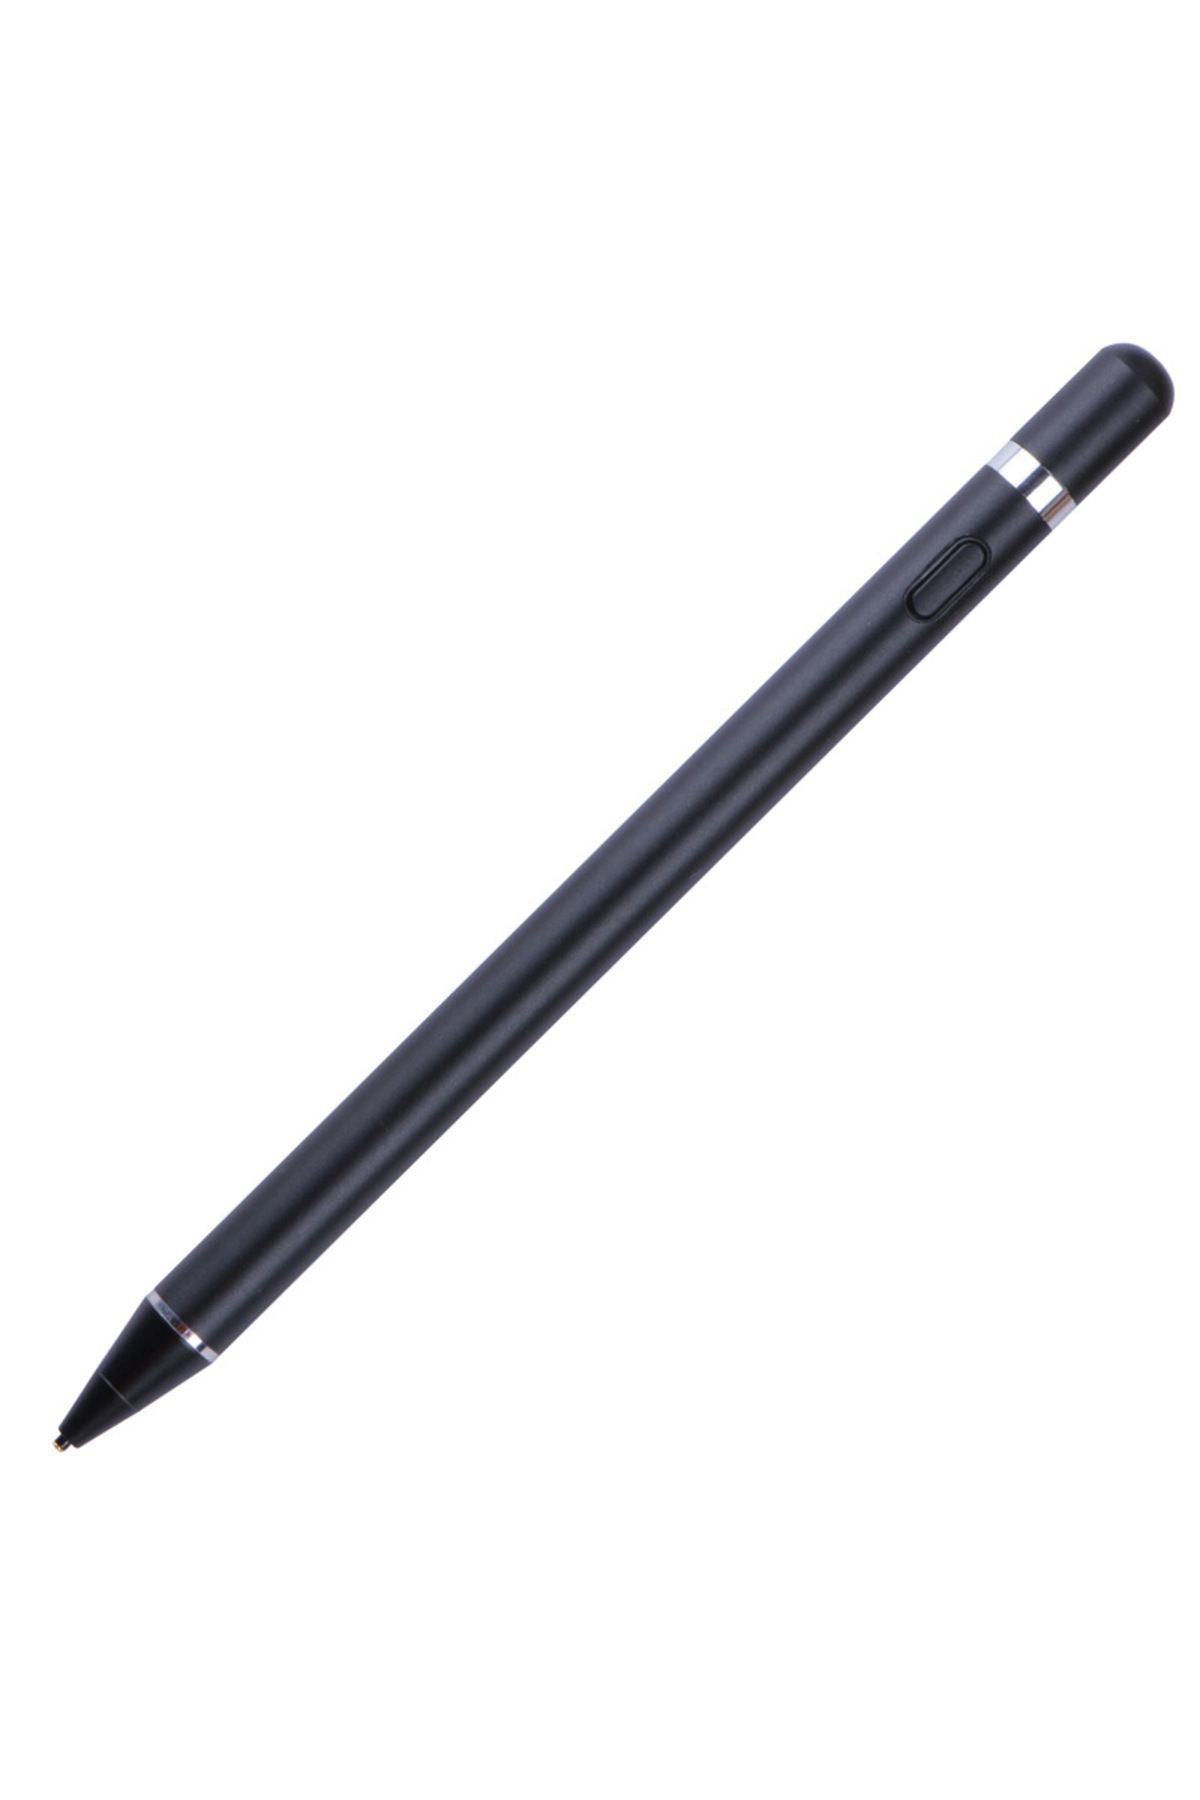 Techmaster Tüm Cihazlar ile Uyumlu Stylus Hassas Yazı Çizim Kalemi 2. Nesil